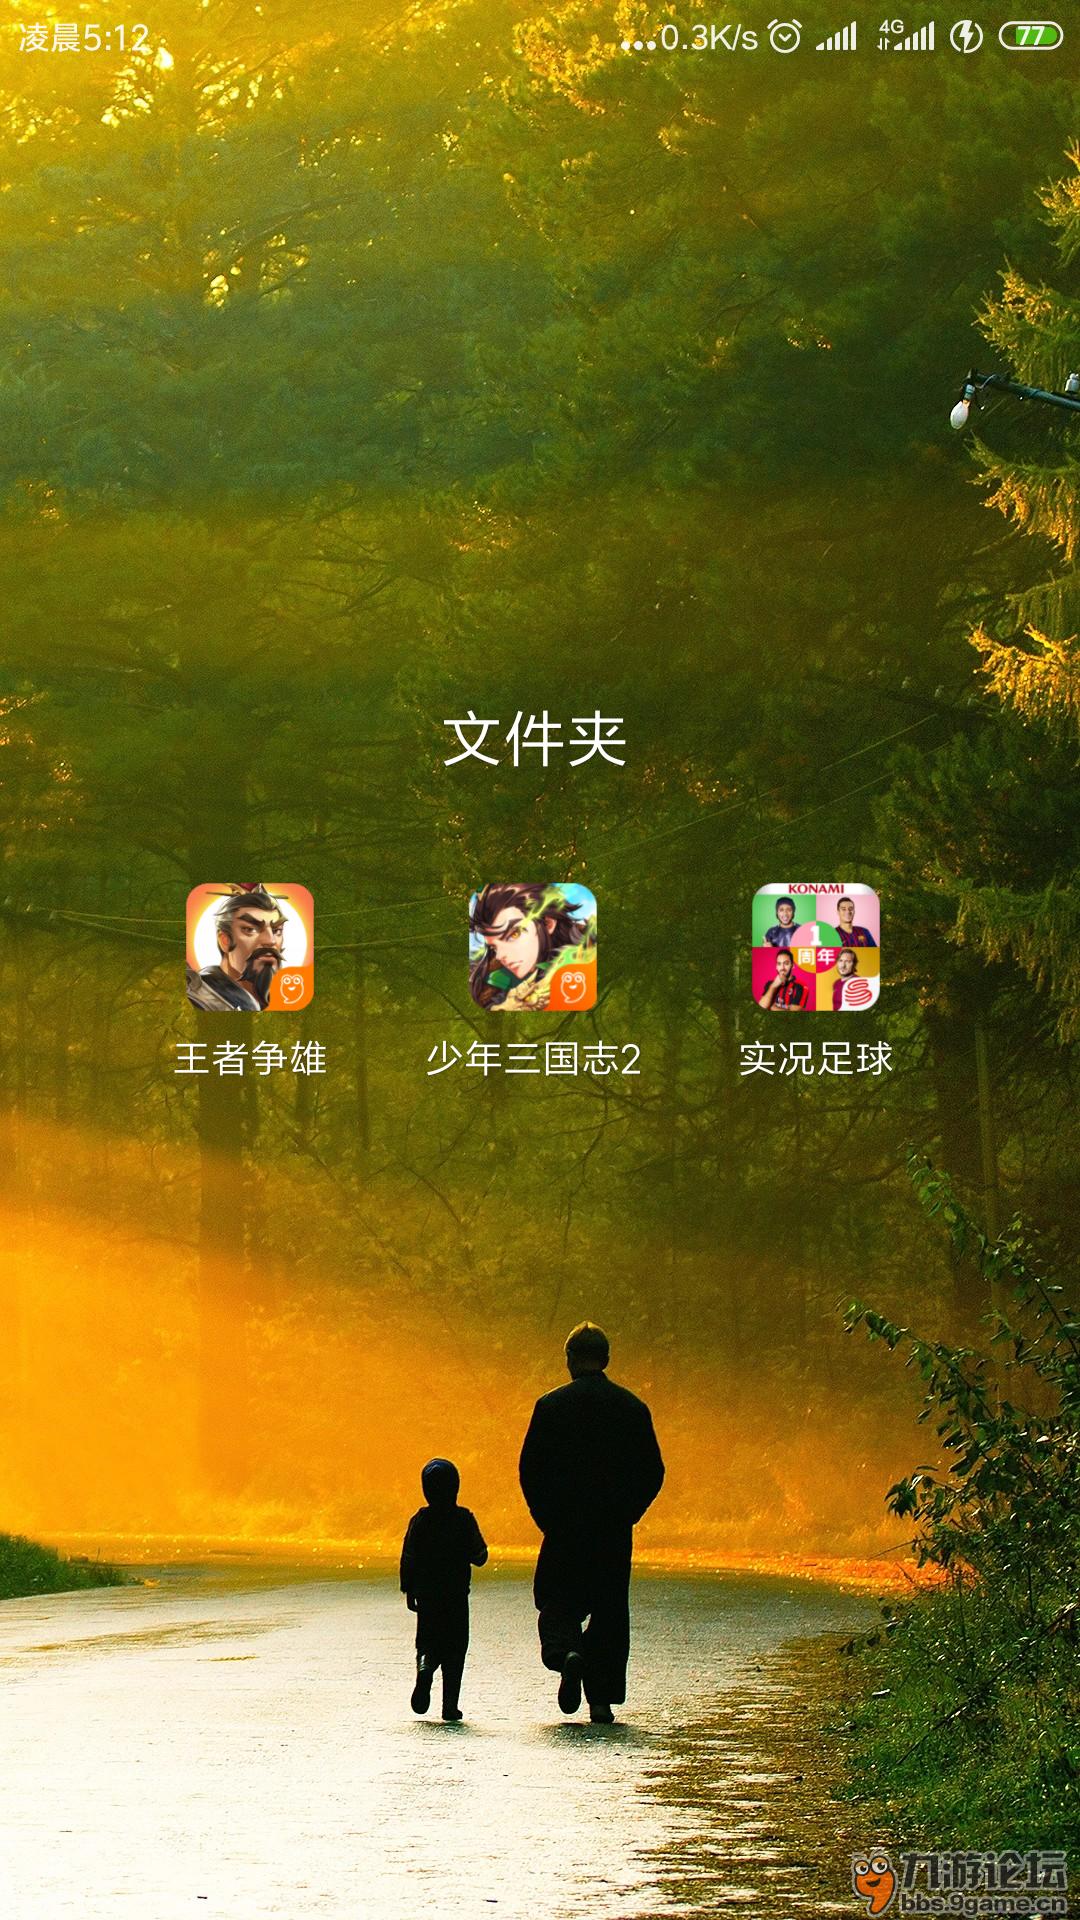 ios福利游戏盒子手游_玩游戏领福利苹果手机下载_苹果福利游戏兑换码